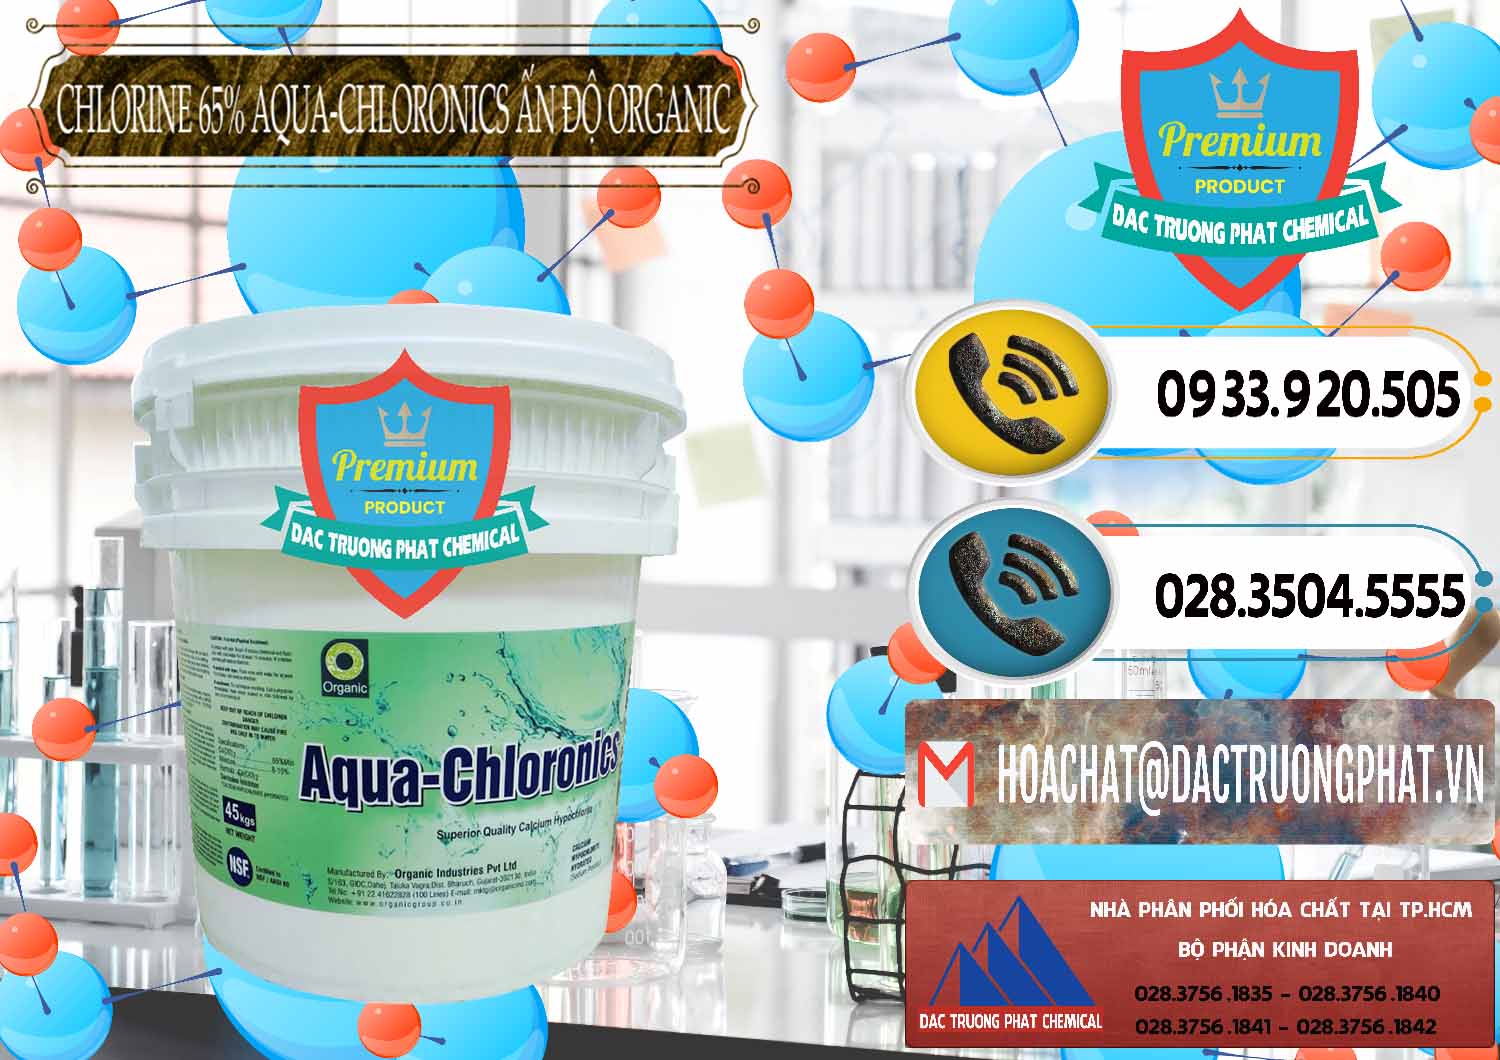 Đơn vị chuyên cung ứng - bán Chlorine – Clorin 65% Aqua-Chloronics Ấn Độ Organic India - 0210 - Đơn vị chuyên kinh doanh - cung cấp hóa chất tại TP.HCM - hoachatdetnhuom.vn